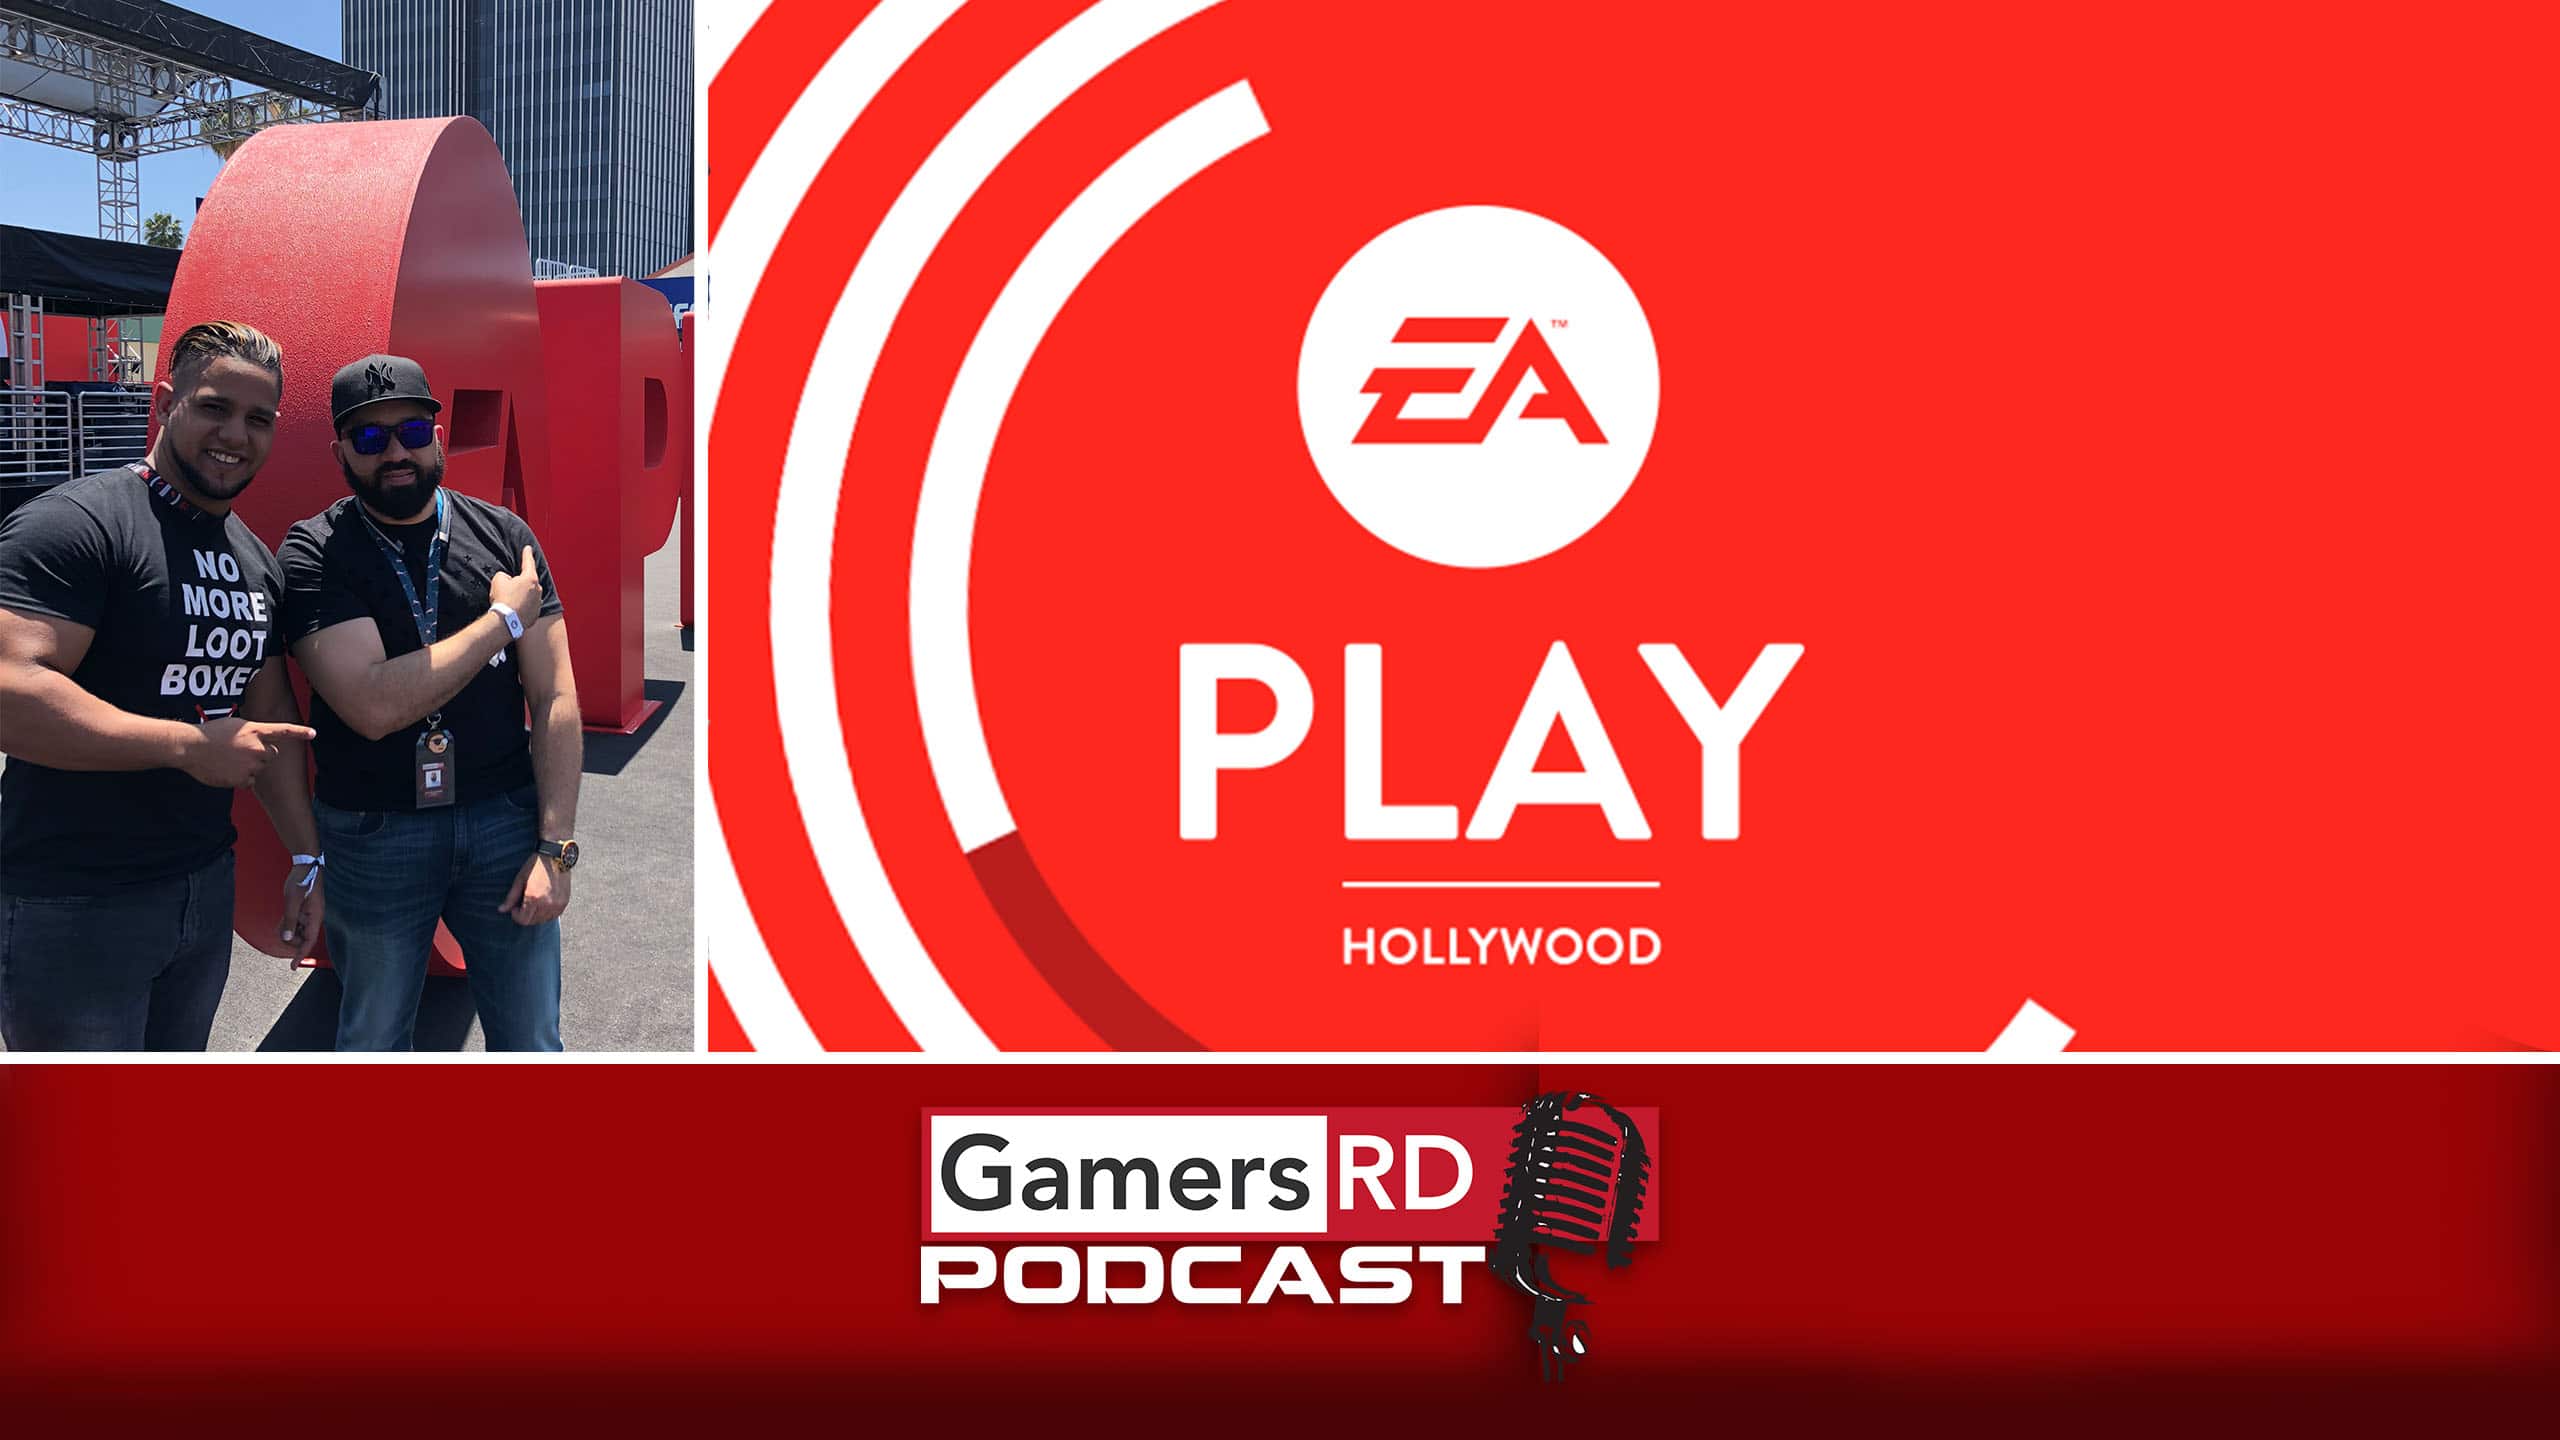 Gamersrd Podcast #E32018 #EAPlay 2018